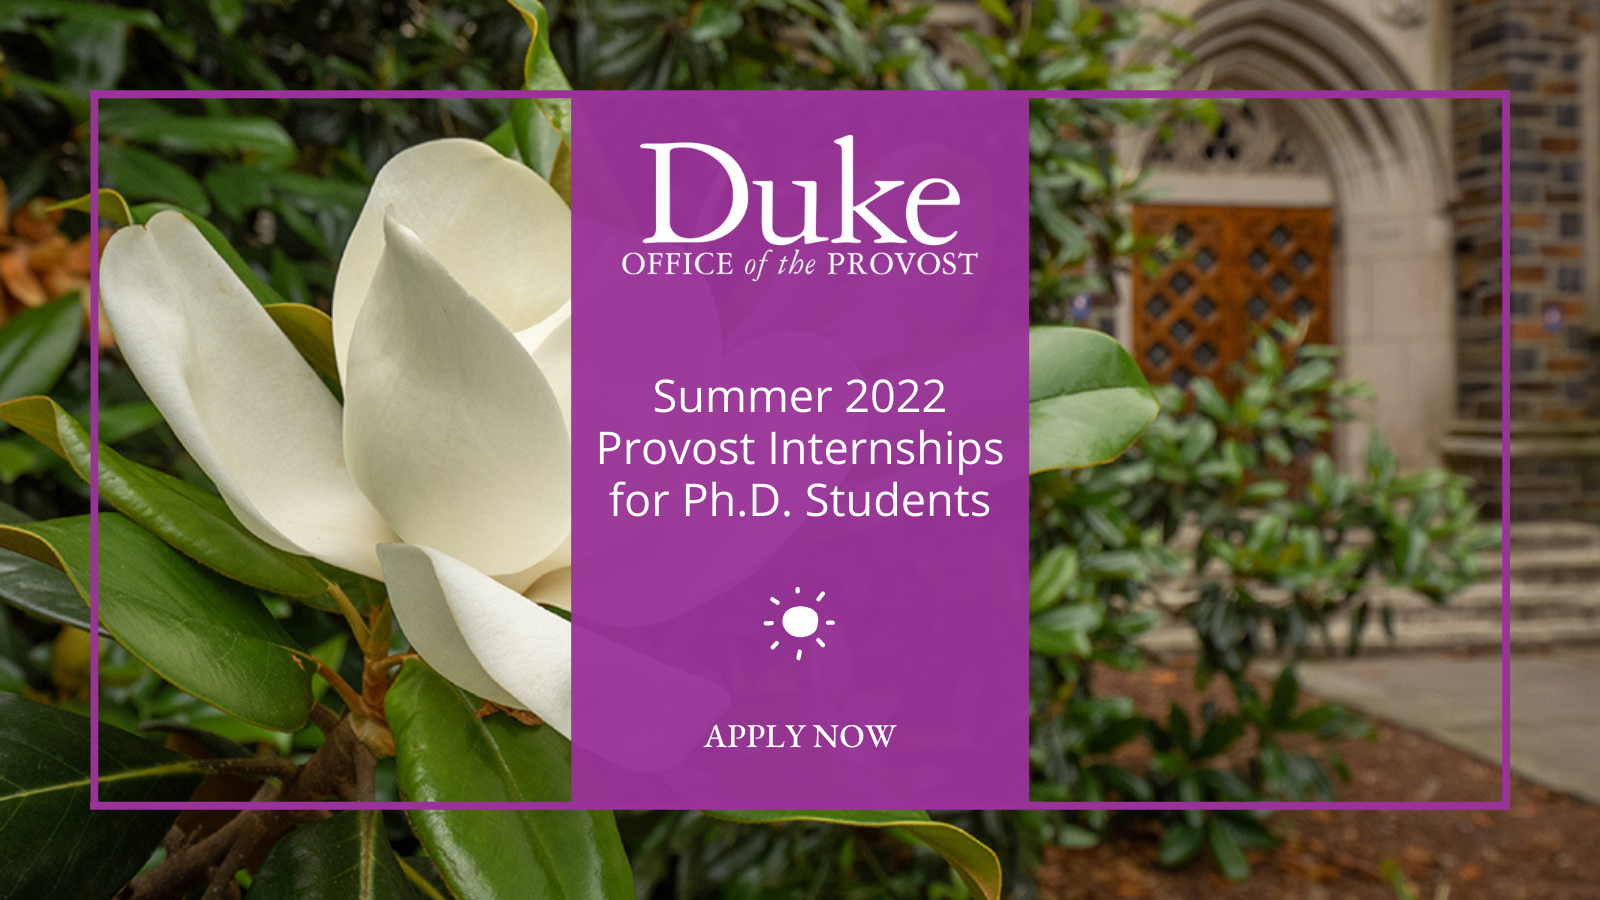 Summer 2022 Provost Internships for Duke Ph.D. Students. Apply now.